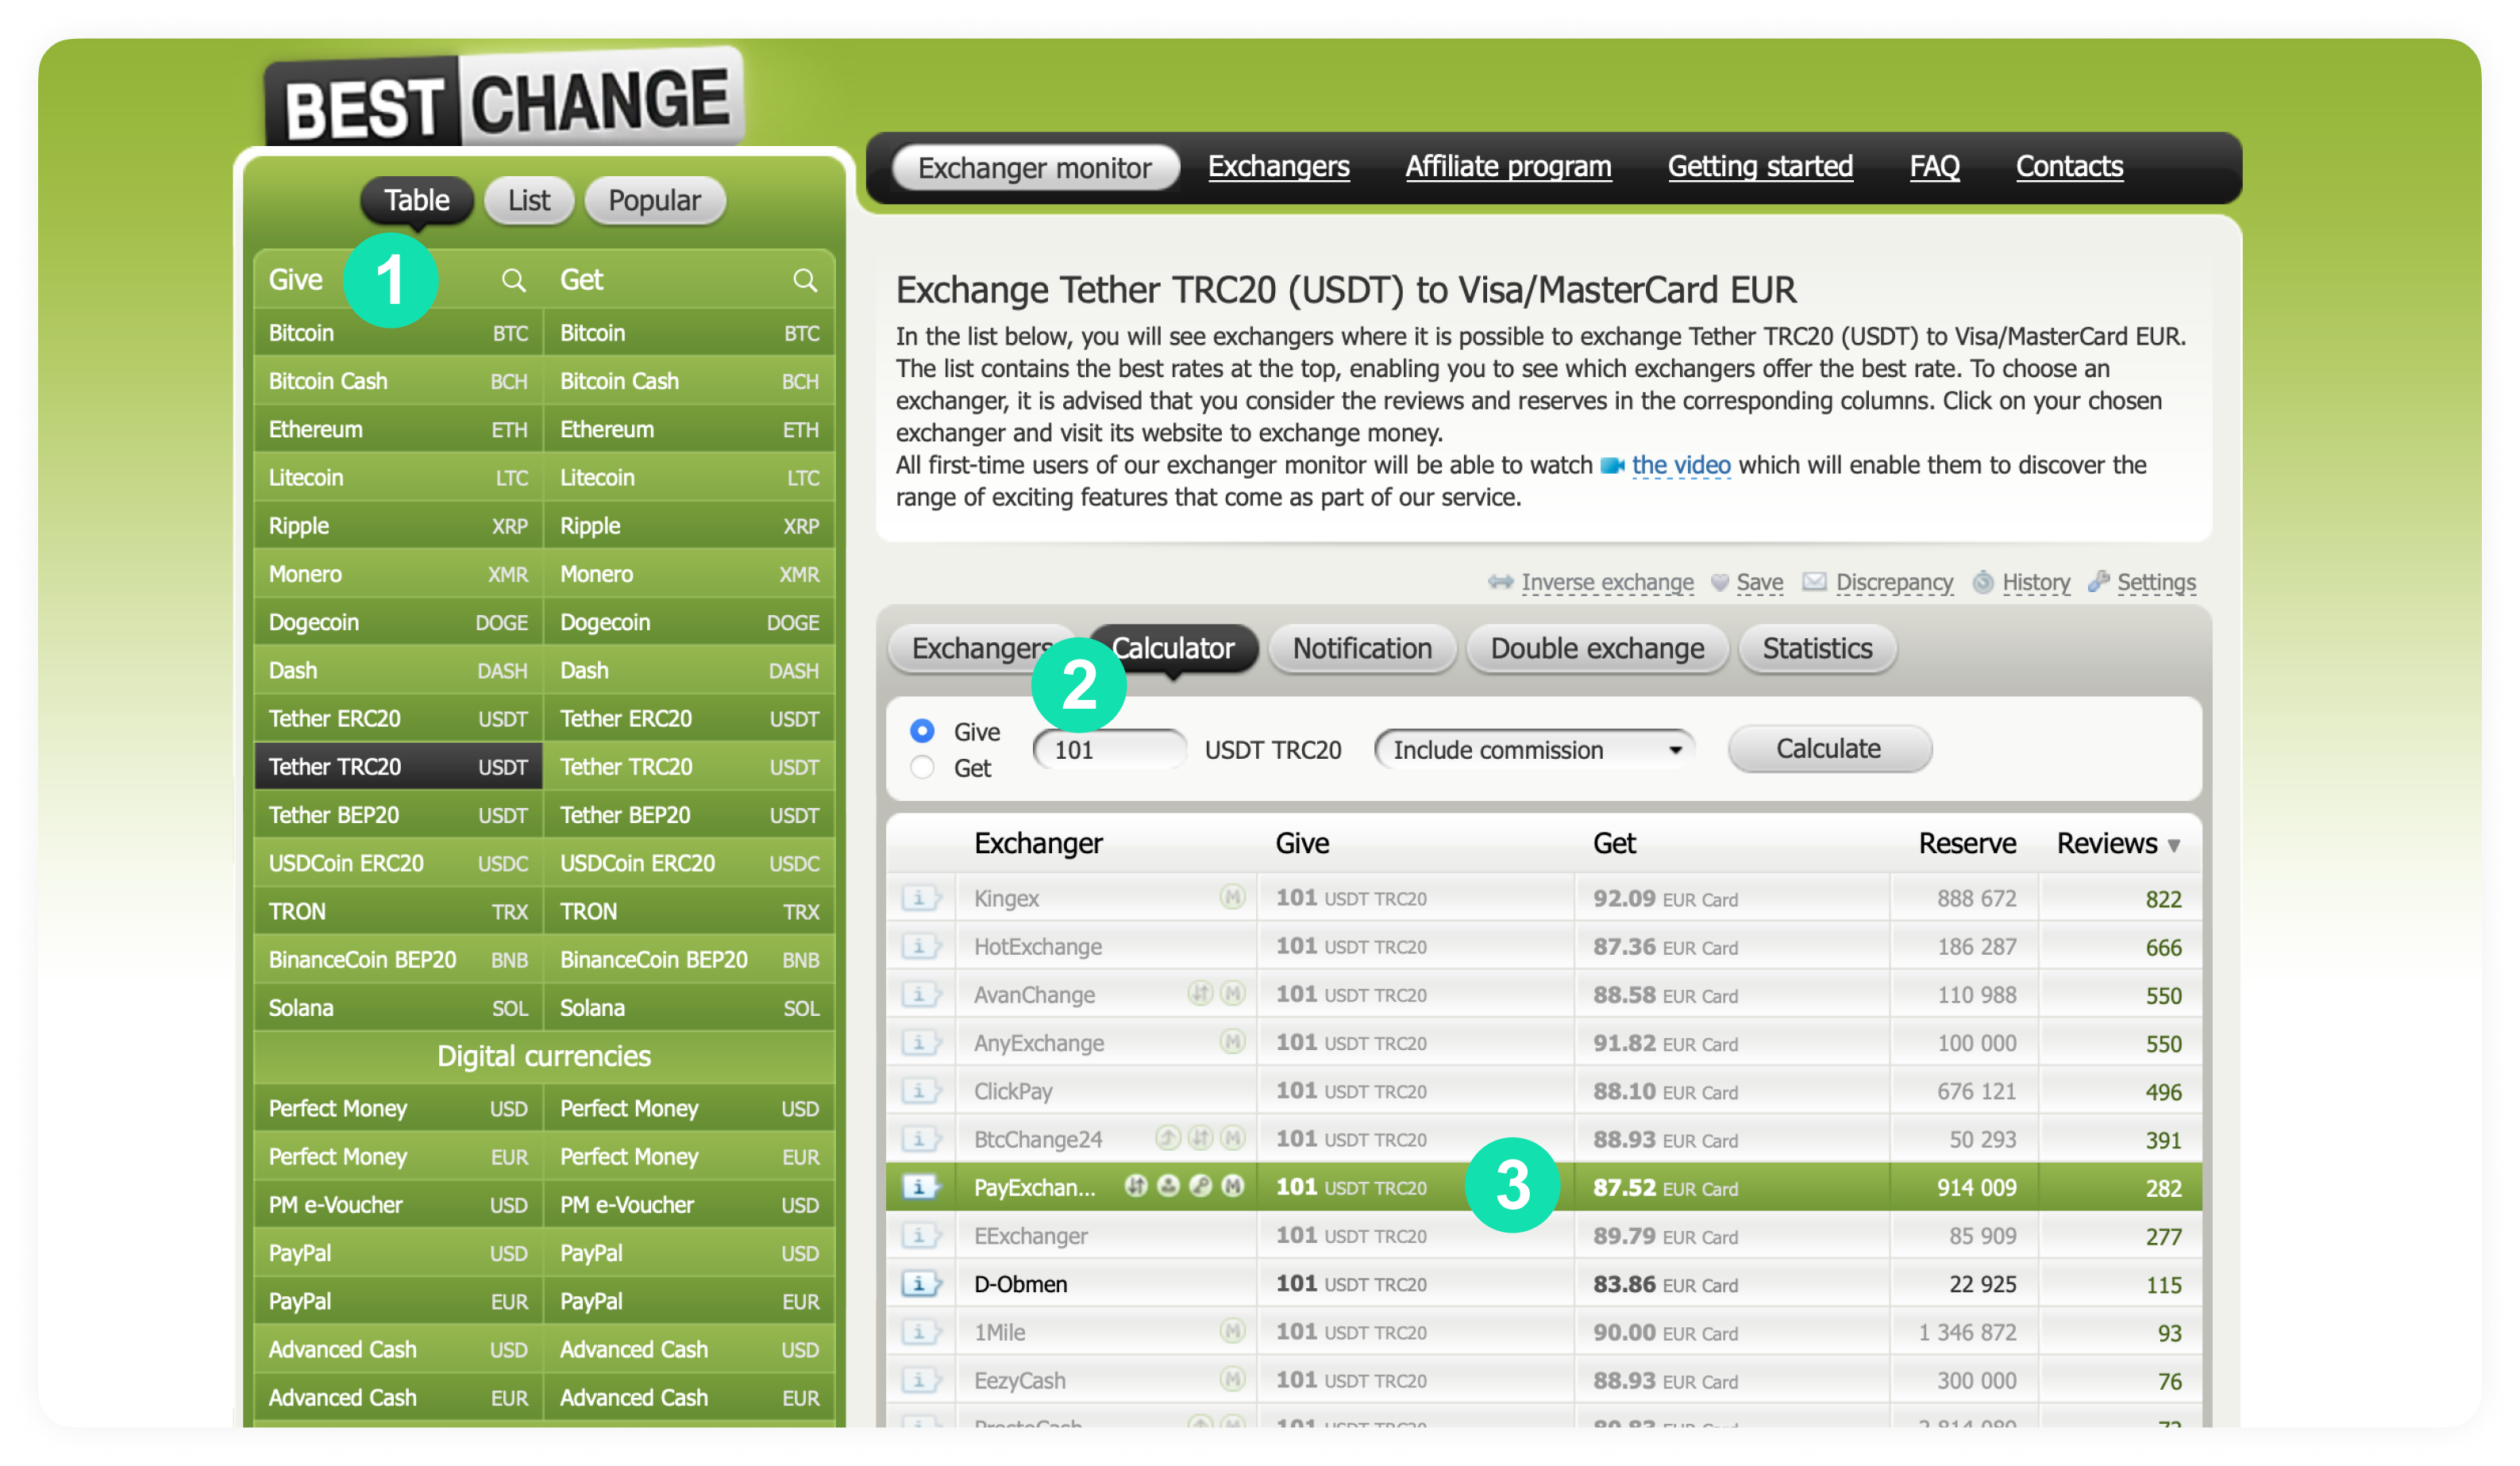 Скриншот главной страницы сайта «Бестчендж» — еще одного агрегатора обменников, где можно сравнить курсы обмена любых валют и выбрать обменник по количеству отзывов